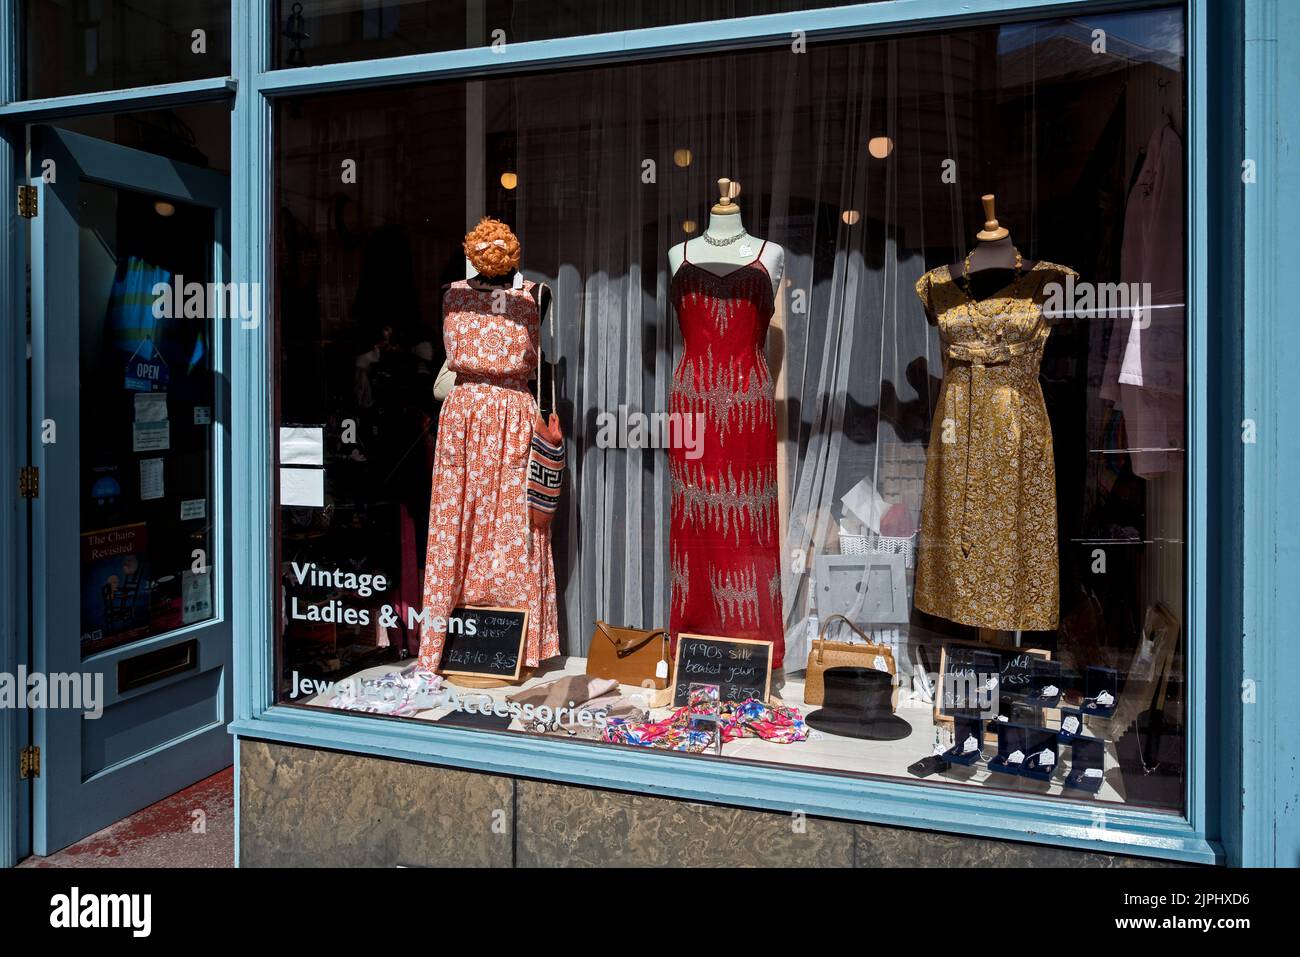 Exhibición de la ventana de Carnivale, una tienda de ropa vintage en Bread Street, Edimburgo, Escocia, Reino Unido. Foto de stock